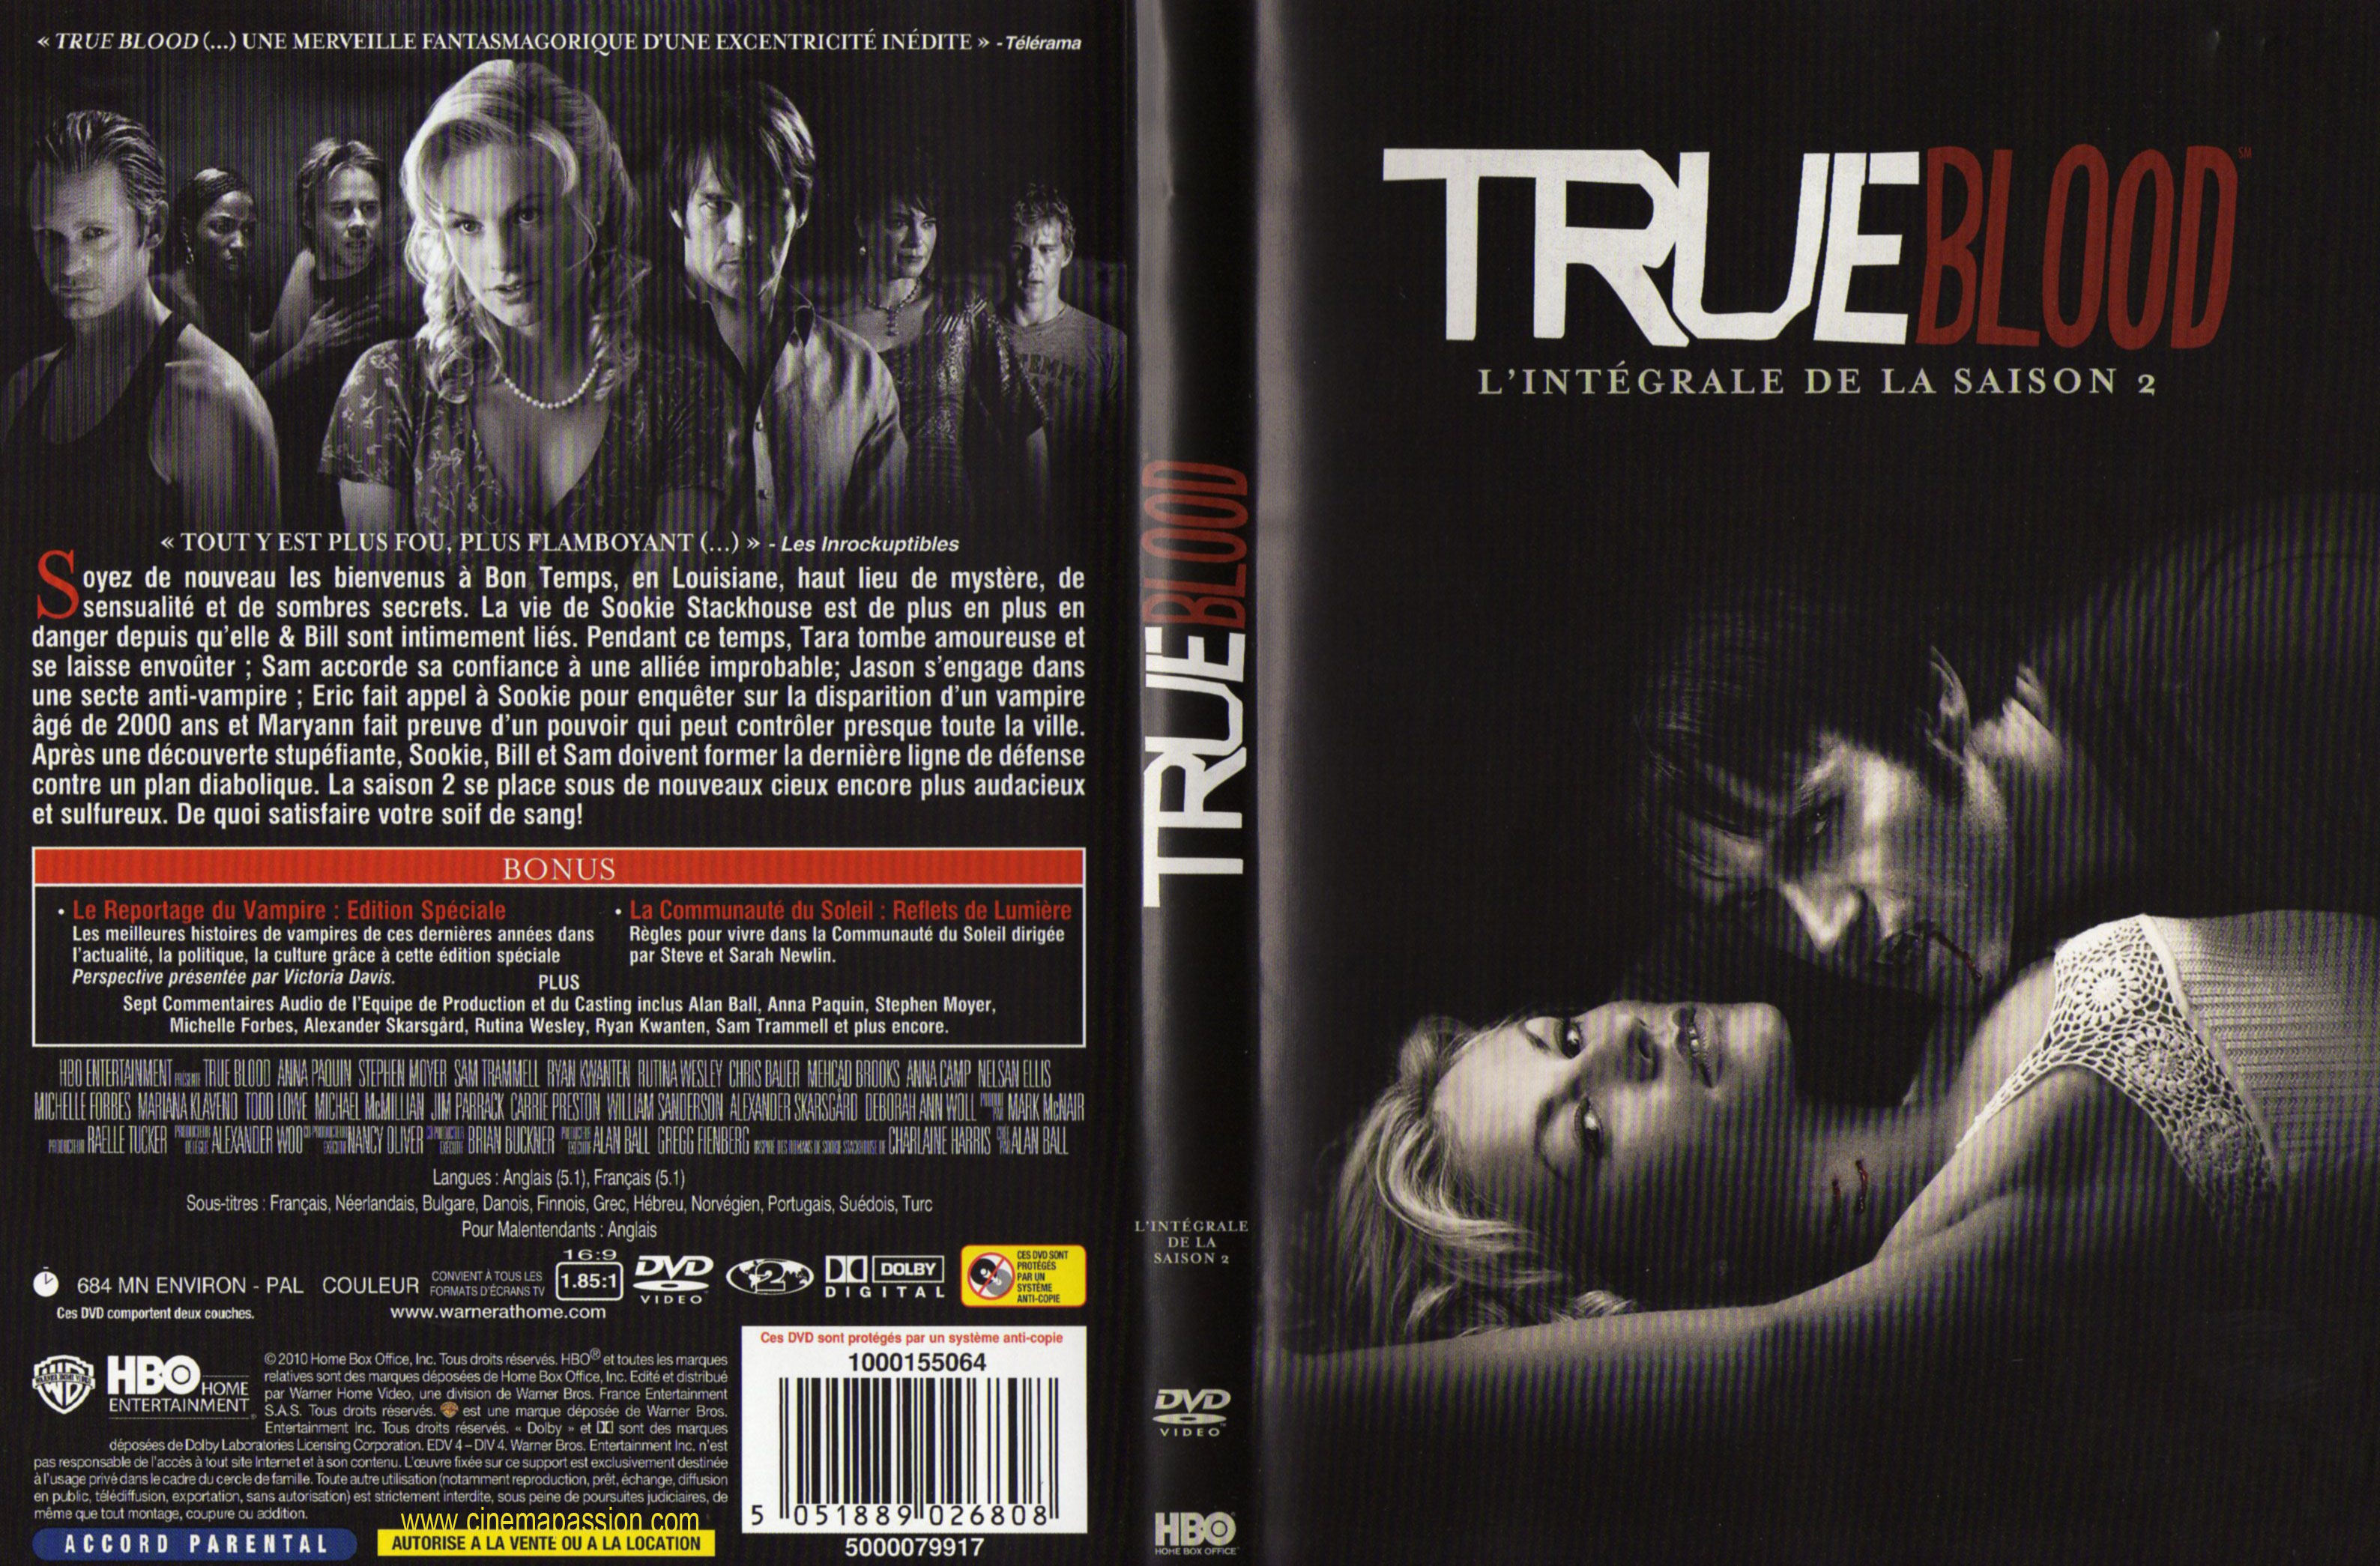 Jaquette DVD True blood Saison 2